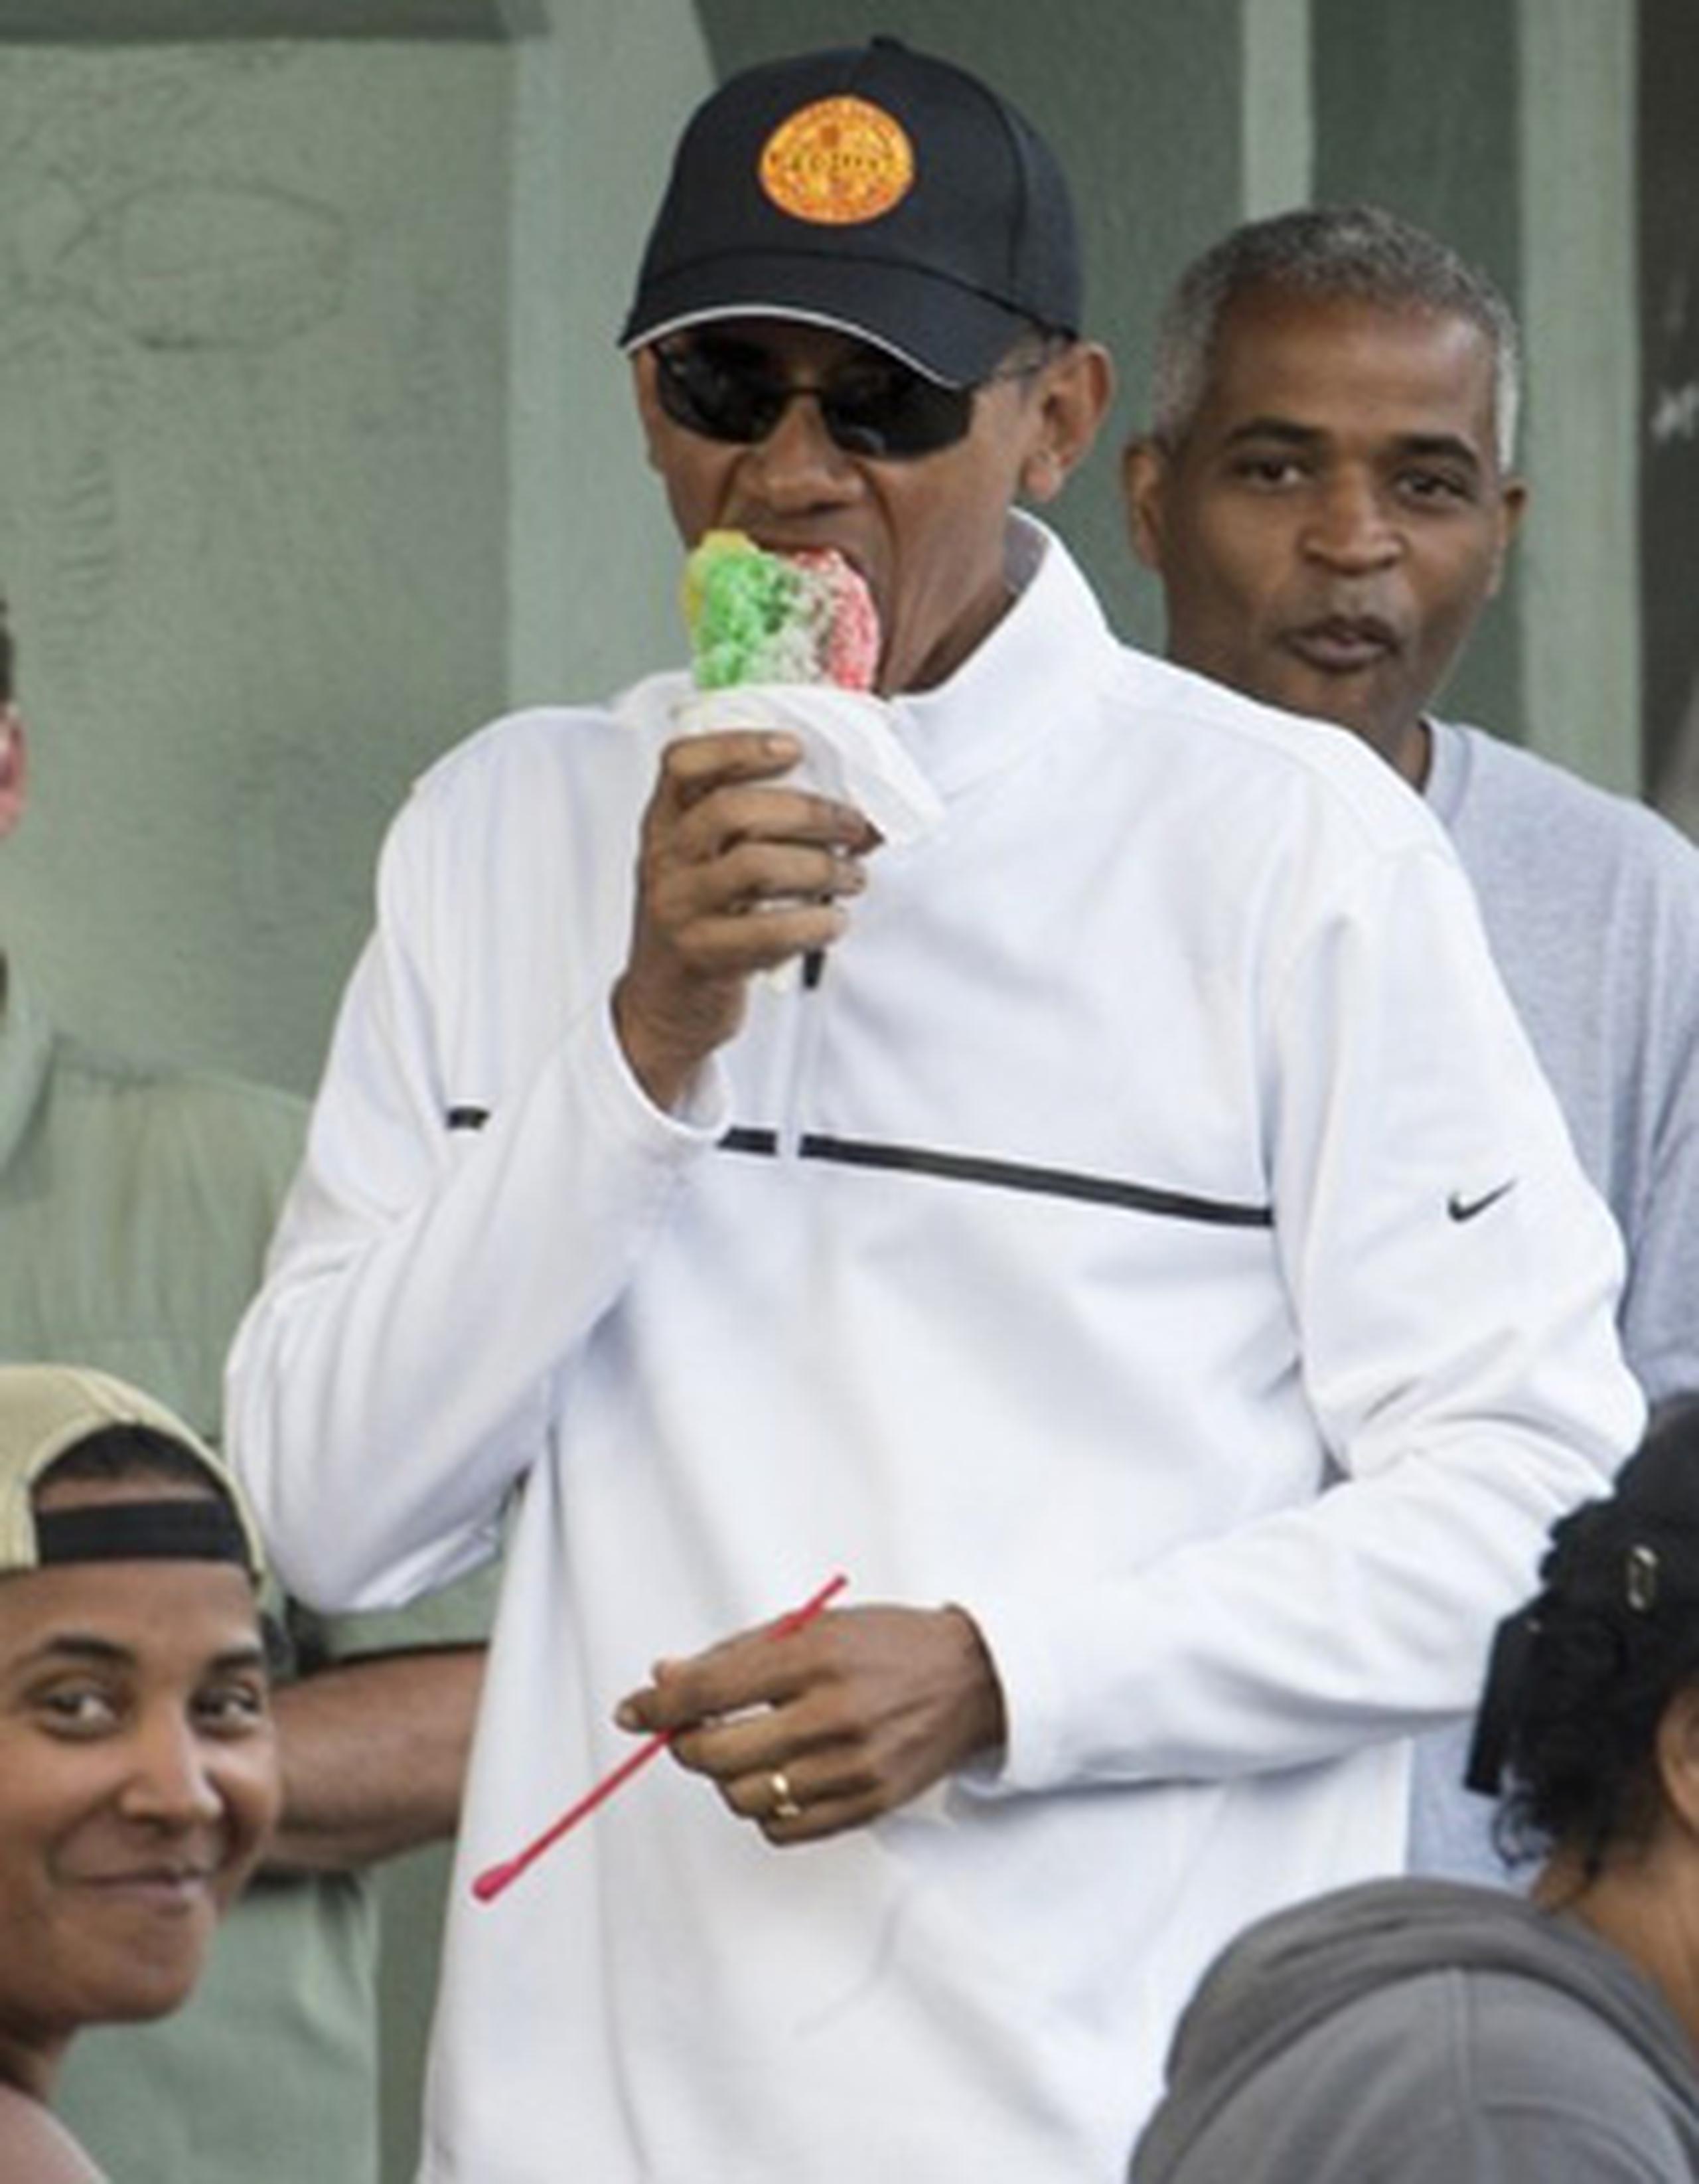 Vestido con ropa informal, Obama pidió su helado con sirope de melón, cereza y lilikoi. Lilikoi es el término local para referirse a la fruta de la pasión. (AFP)